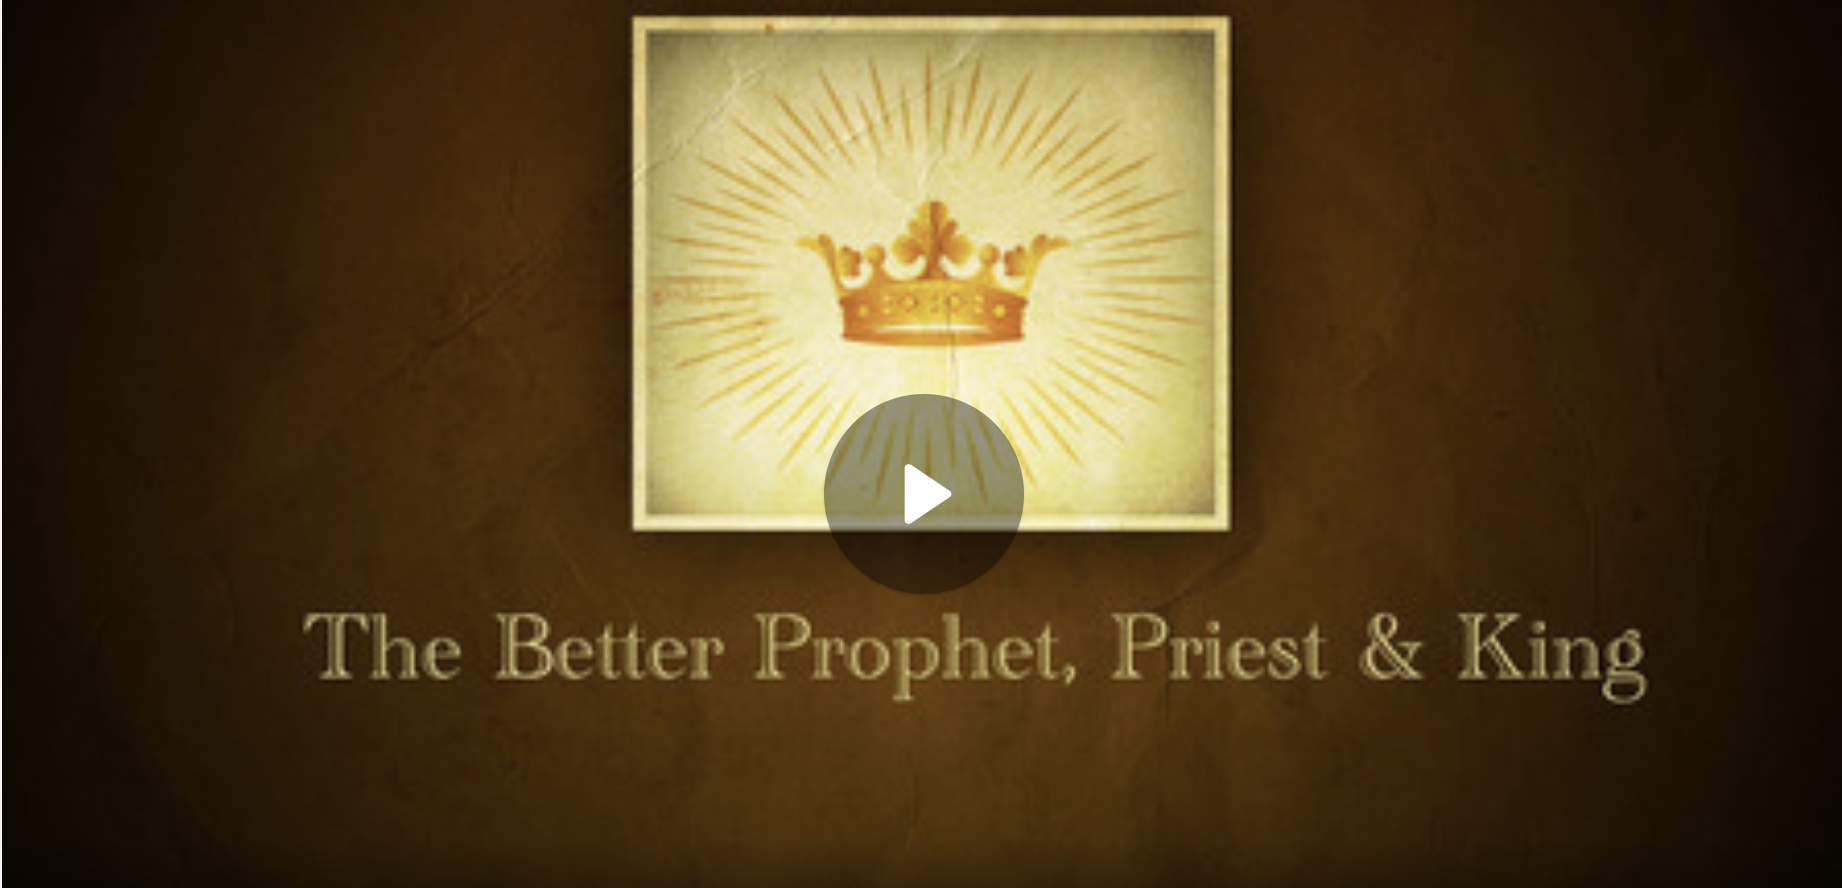 The Better Prophet, Priest & King